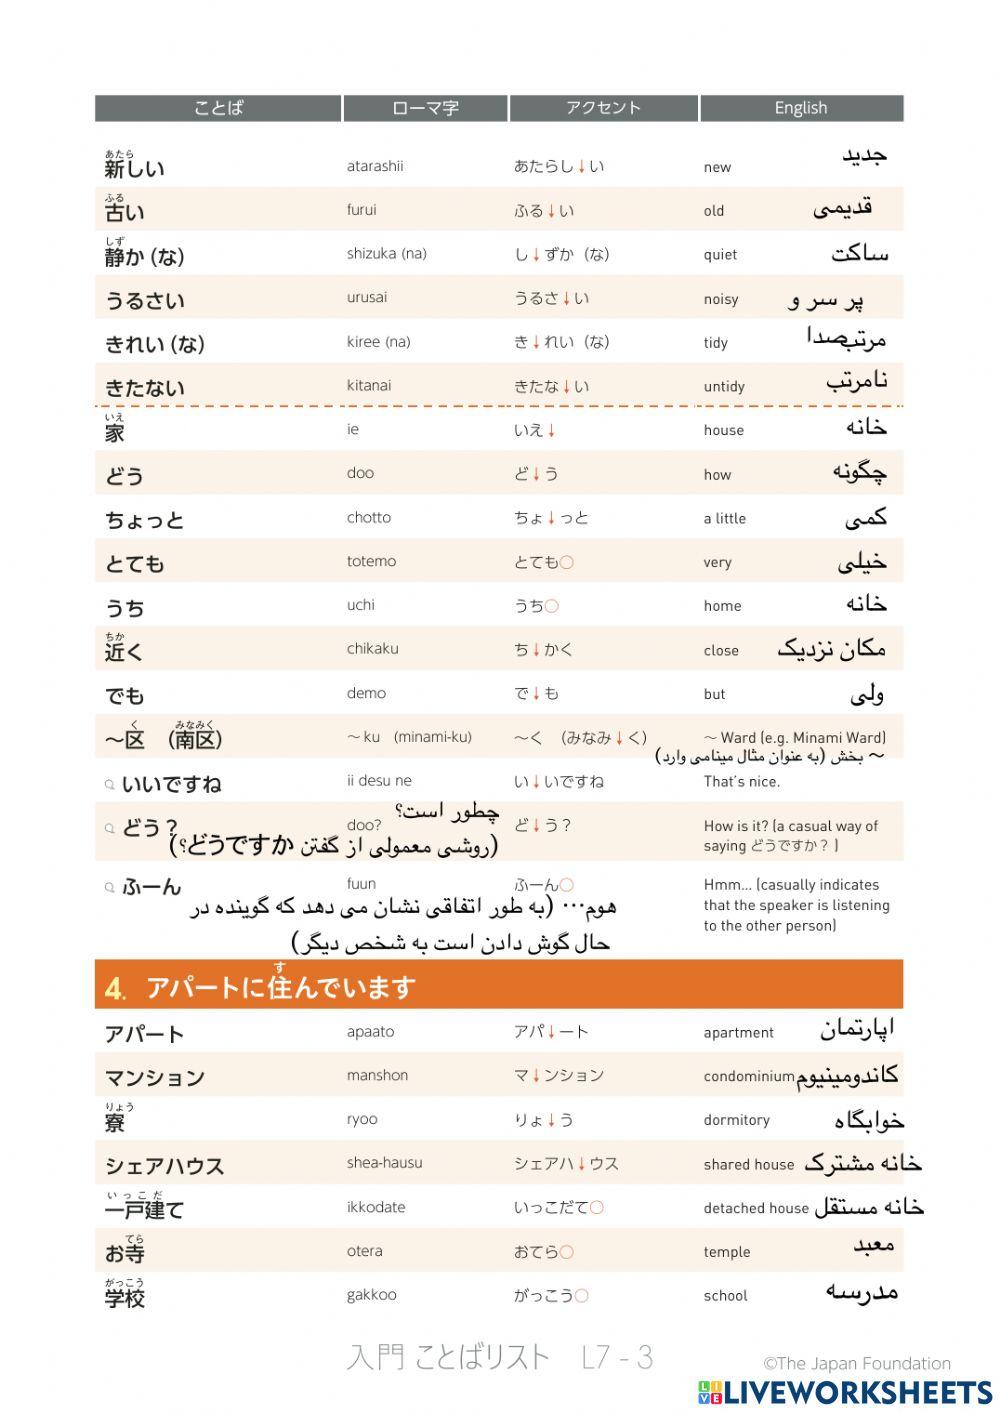 いろどり入門-IRODORI-A1 Persian language